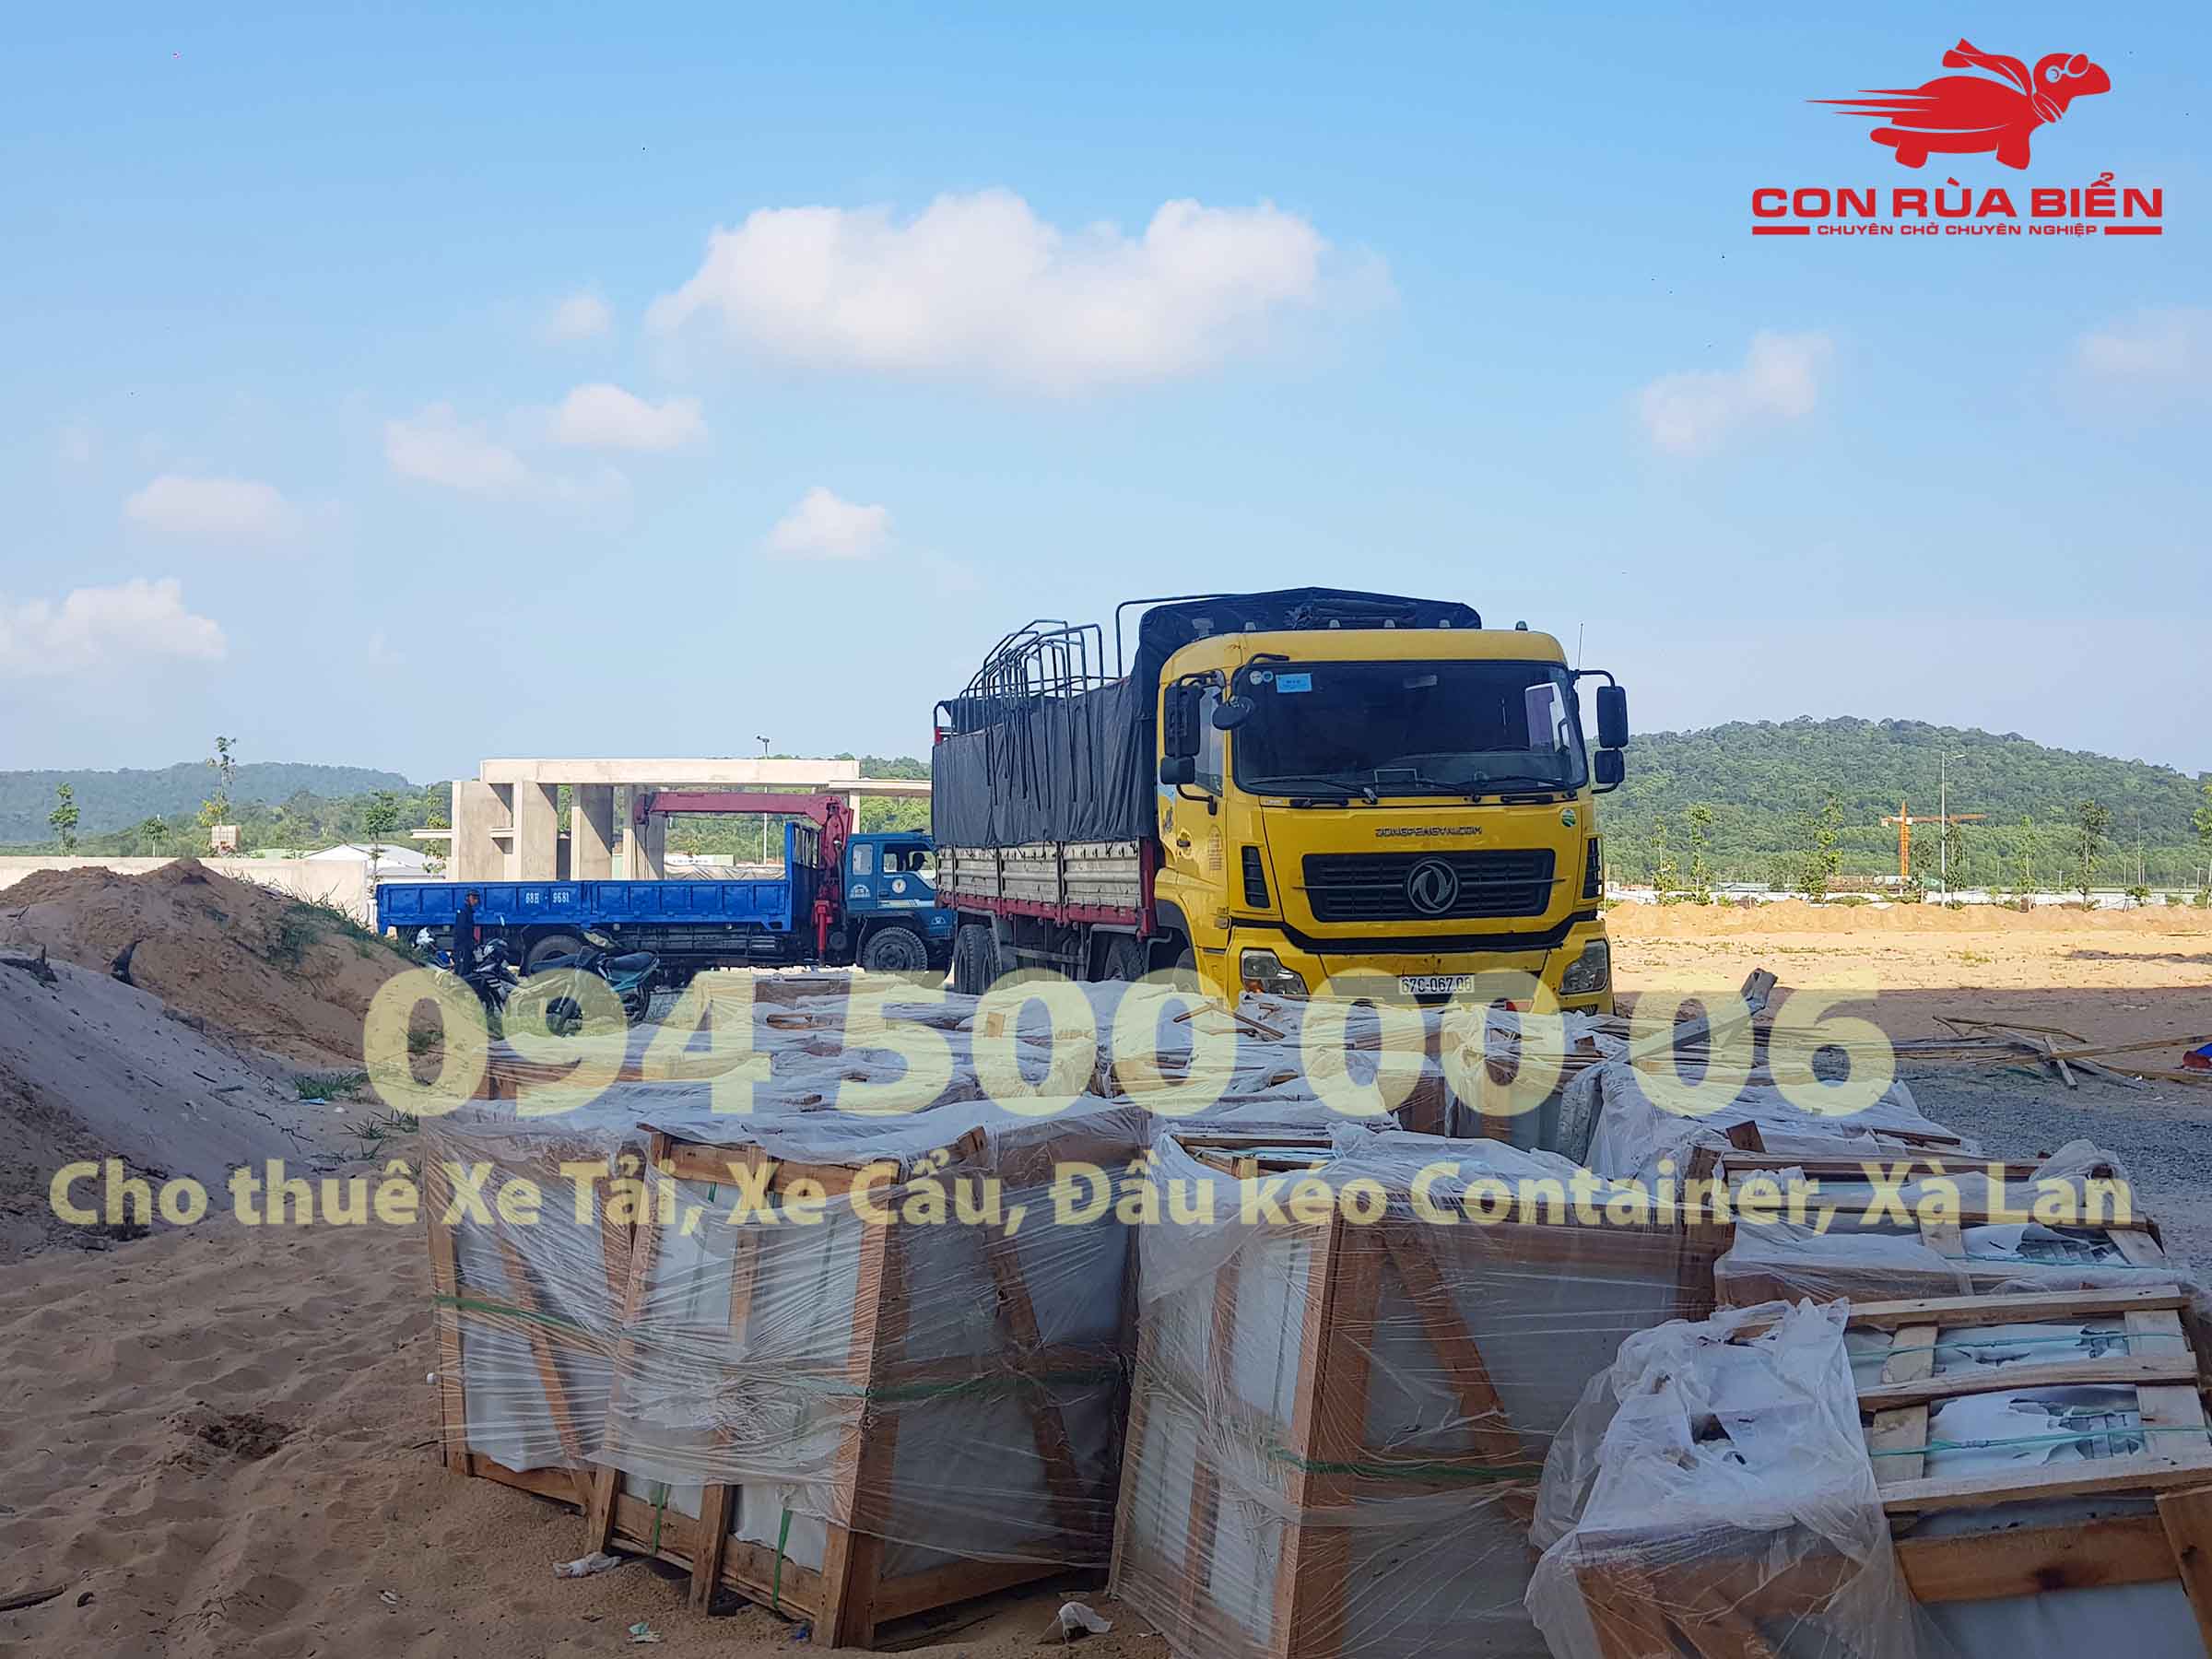 Chành xe Phú Quốc - Con Rùa Biển là xe vận tải 2 chiều chuyên tuyến Hà Nội - Sài Gòn - Phú Quốc với dịch vụ Cho thuê xe tải chở hàng hóa Bắc Nam | 0945000006